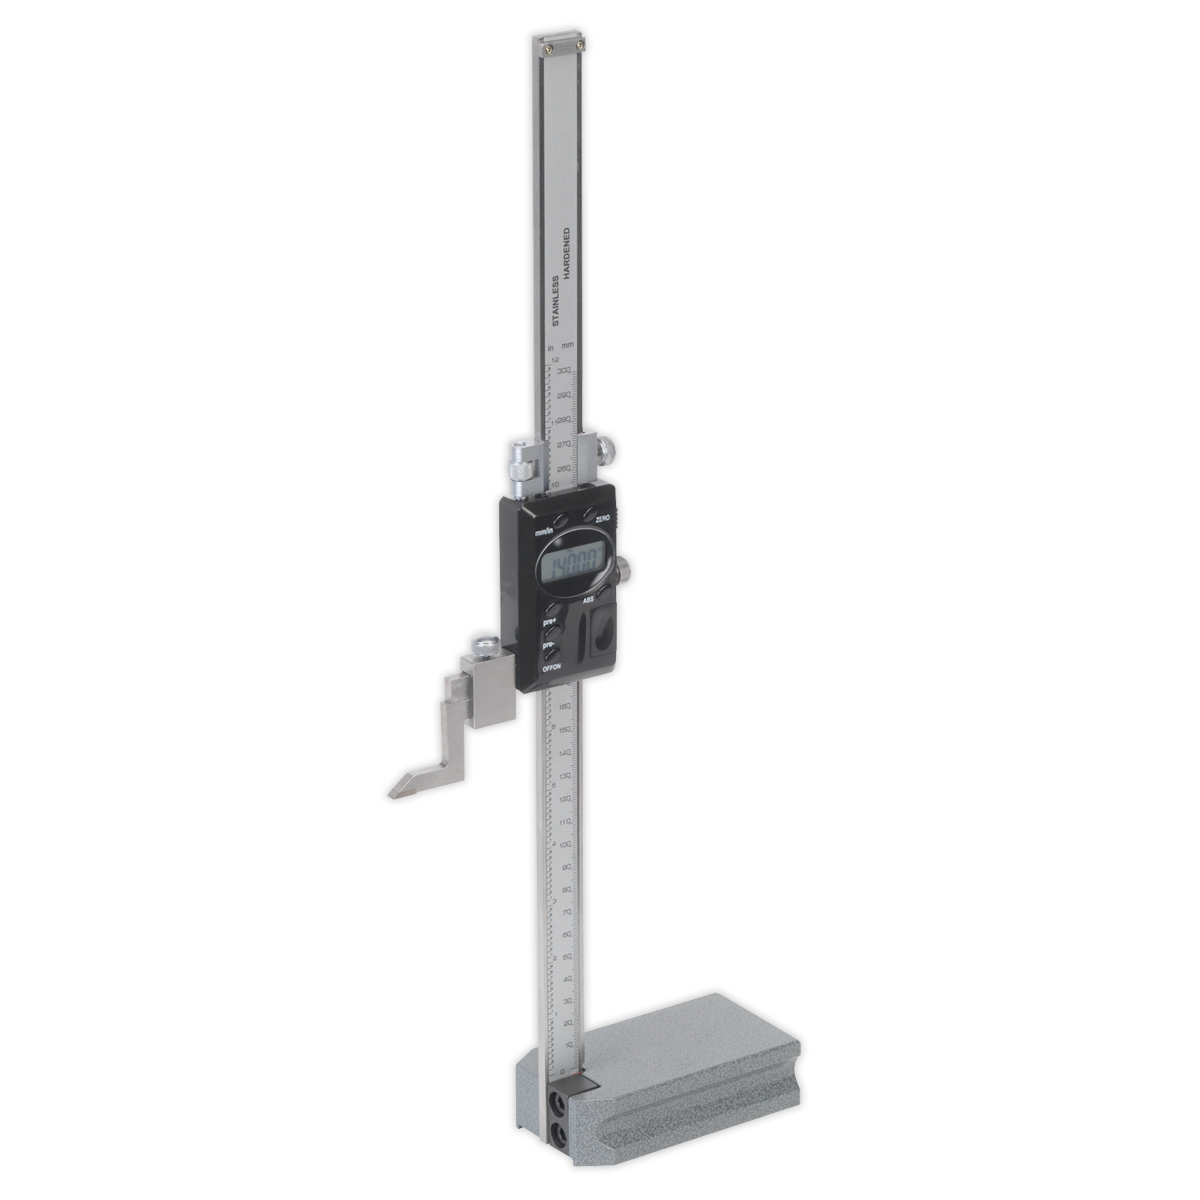 Digital Height Gauge 0-300mm(0-12") - AK9636D - Farming Parts